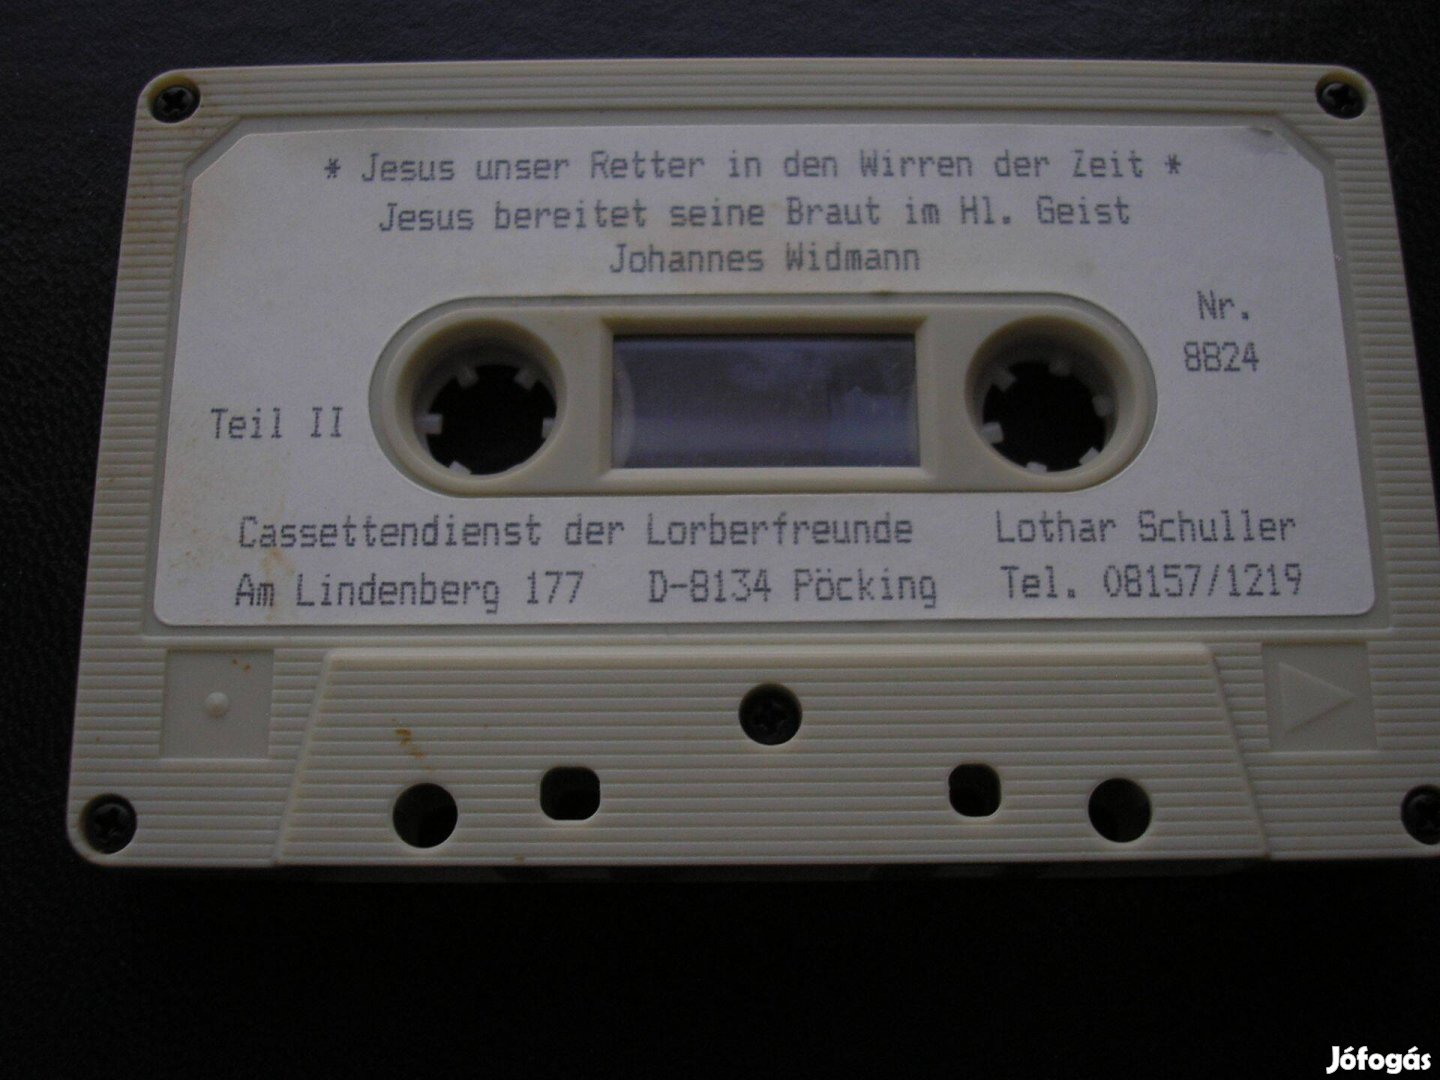 Geist Johannes : Jesus. gyári műsoros kazetta , használt